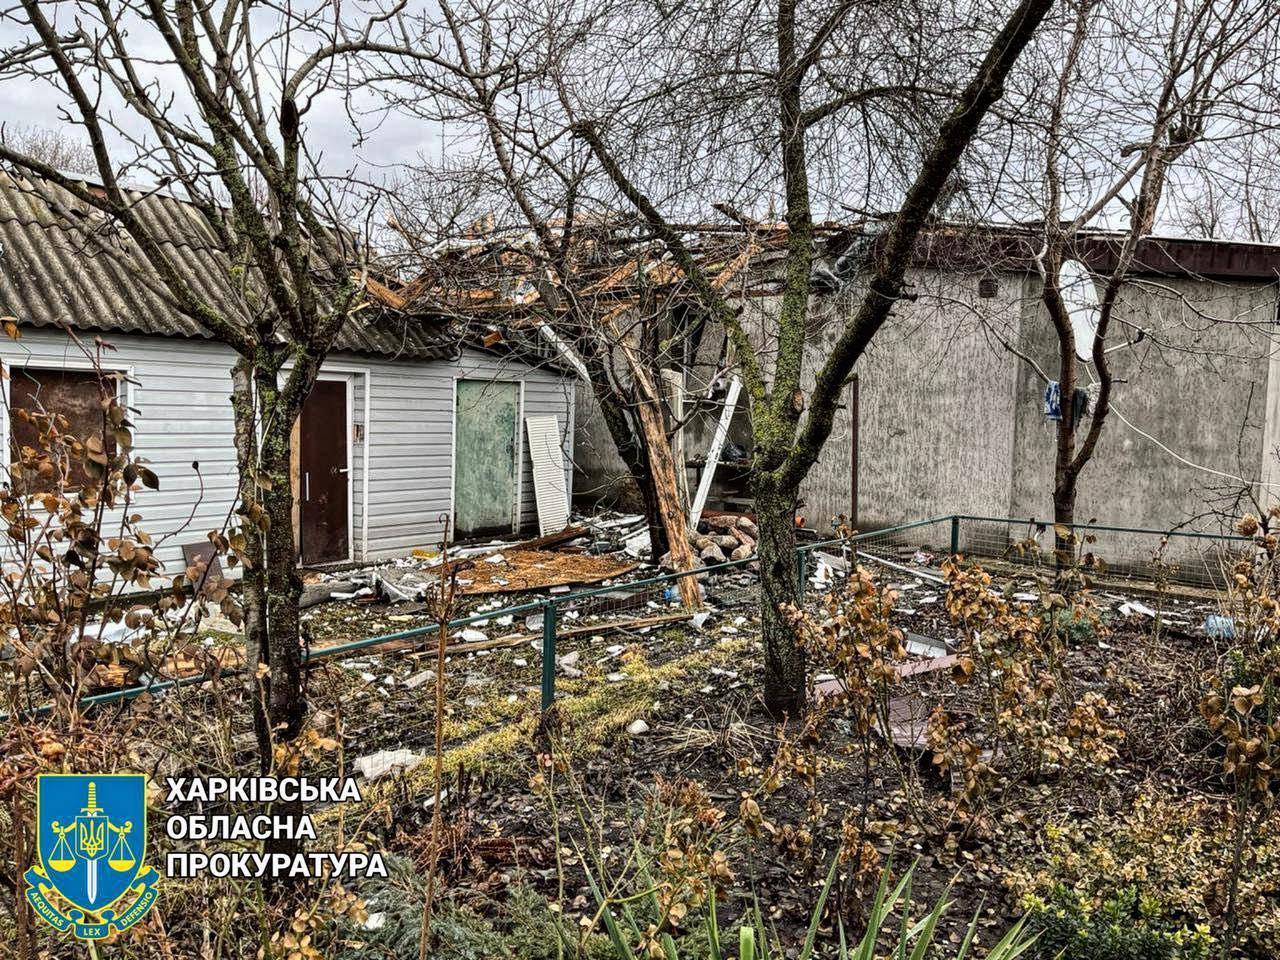 Пошкоджений приватний будинок, Куп'янський район, Харківська область, 13 березня